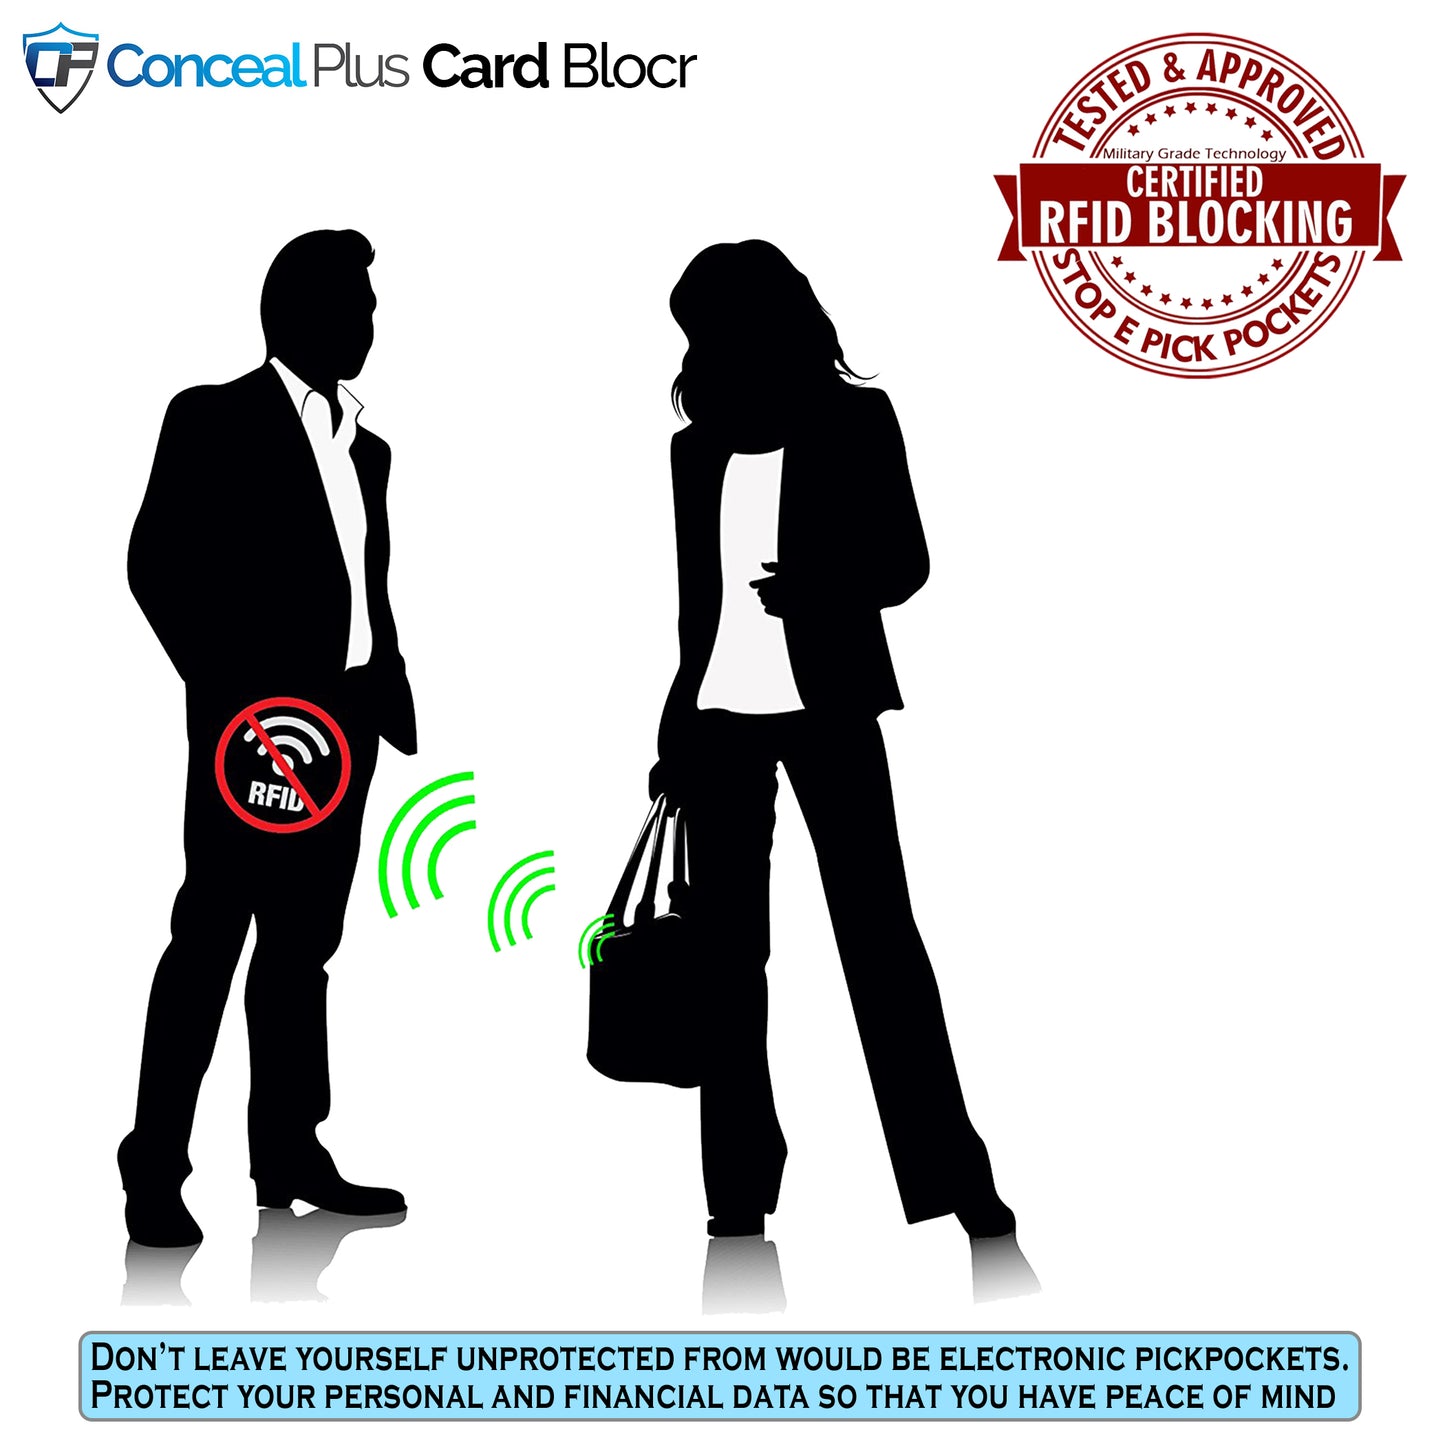 Card Blocr Credit Card Holder Silver Trigger Wallet